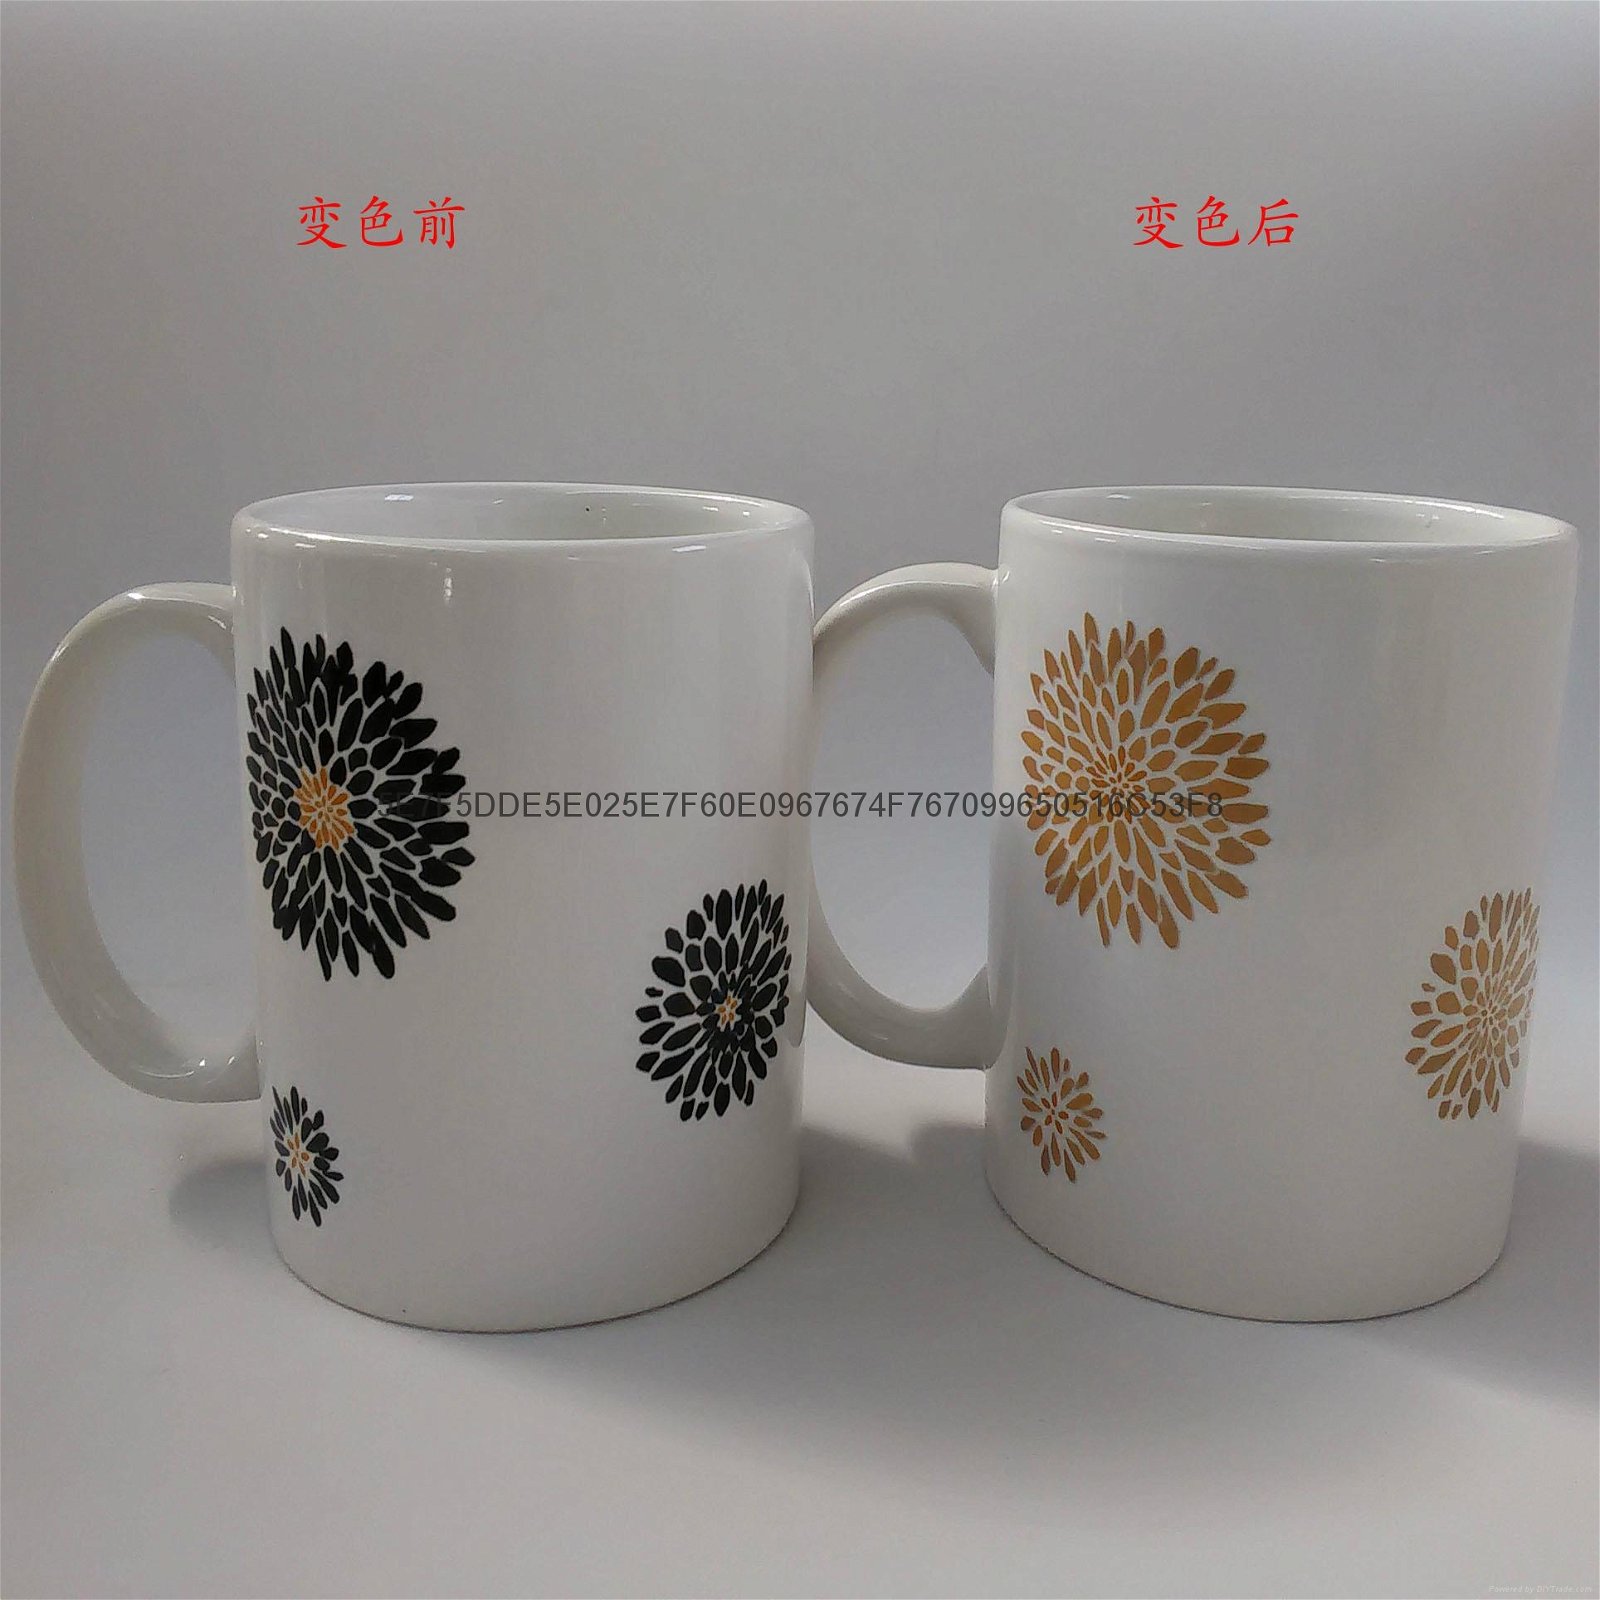 Supply ceramic mug color ads